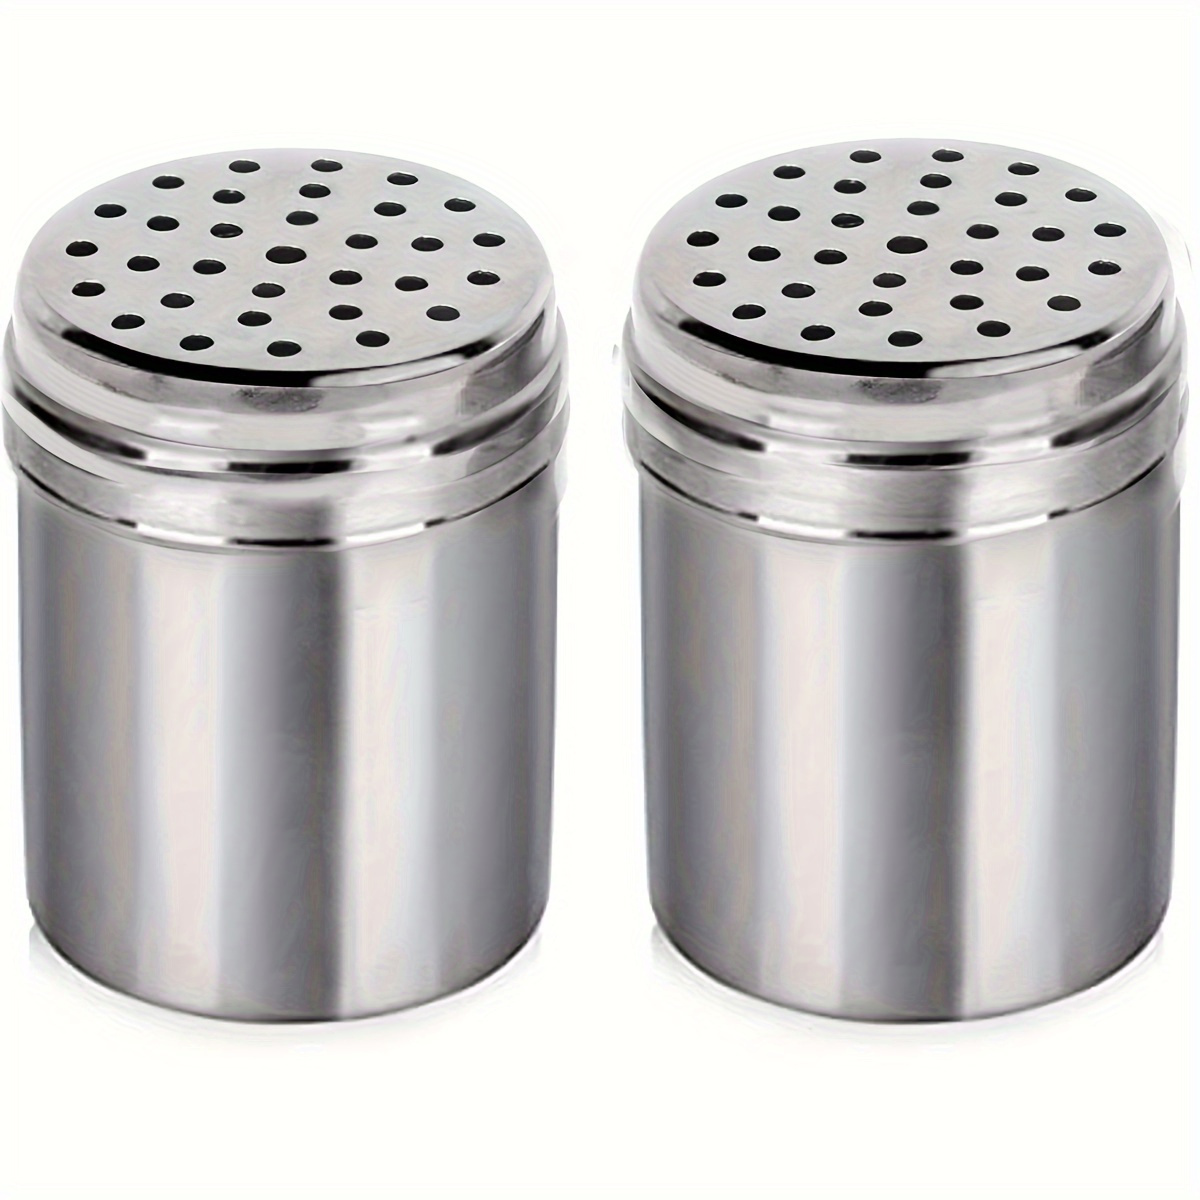 

2pcs Food Service Stainless Steel Salt Pepper Dredge Shaker